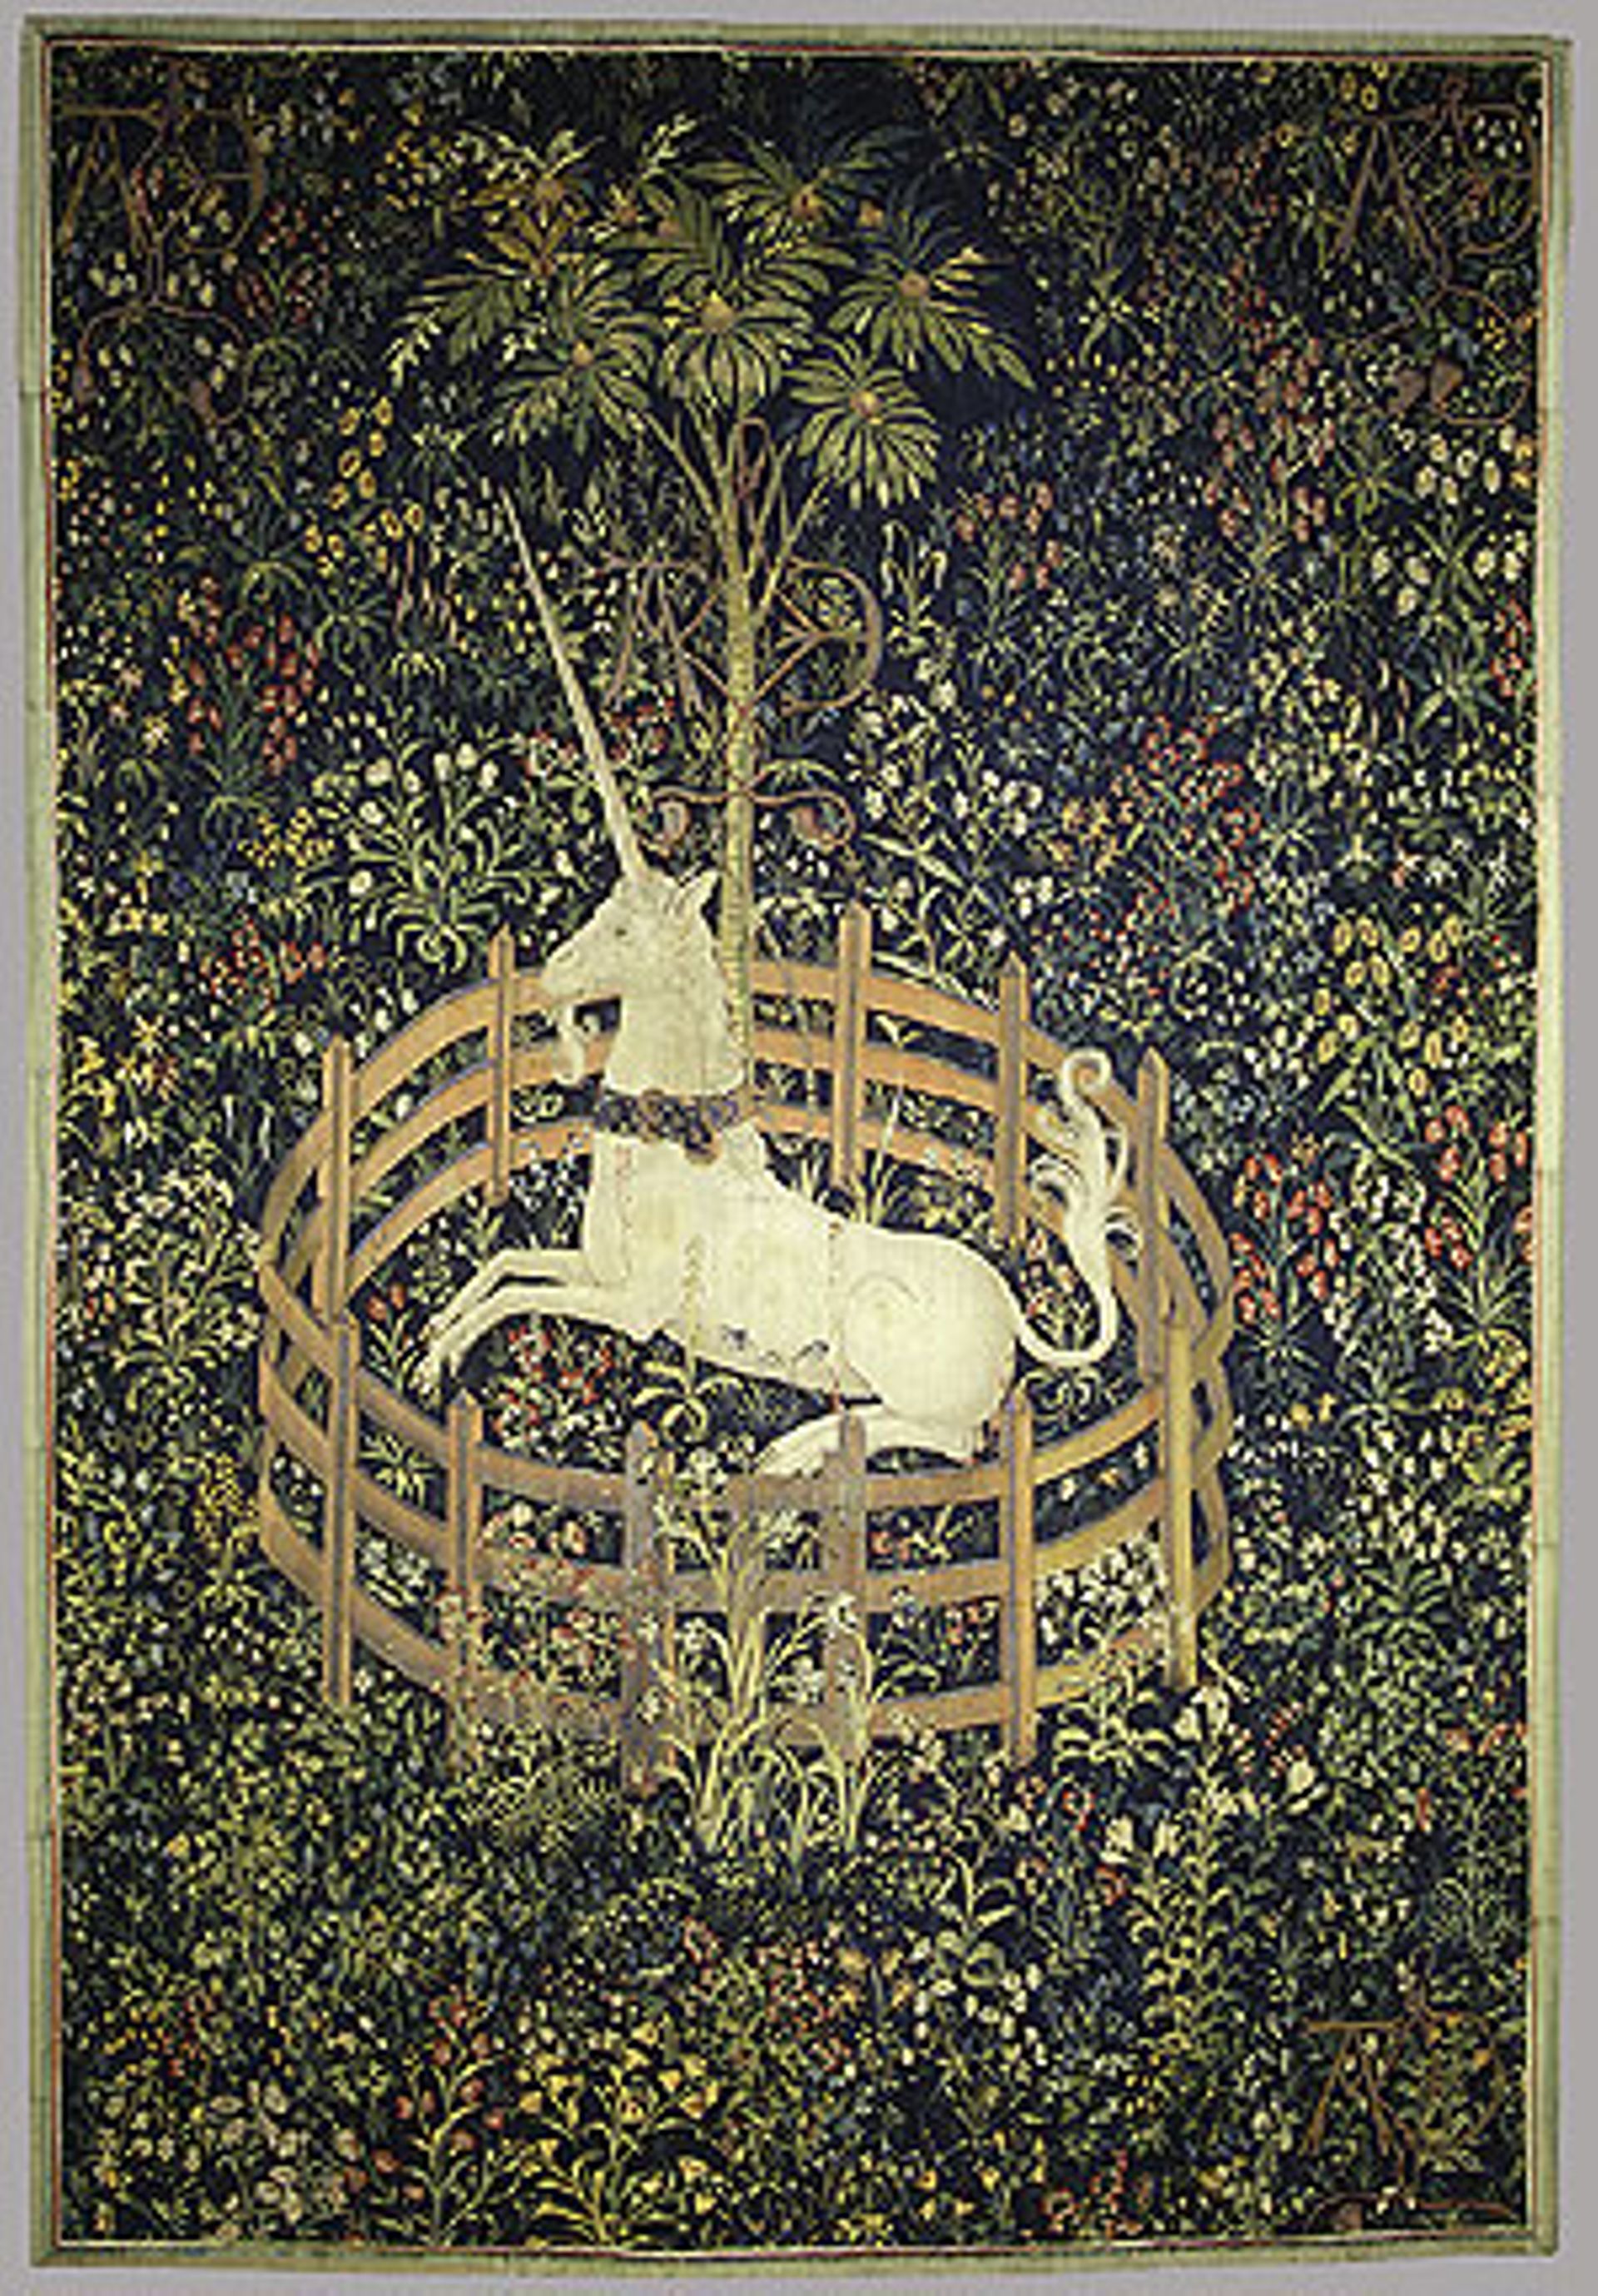 « Licorne en captivité », panneau de tapisserie de la série La chasse à la licorne de style mille-fleur.